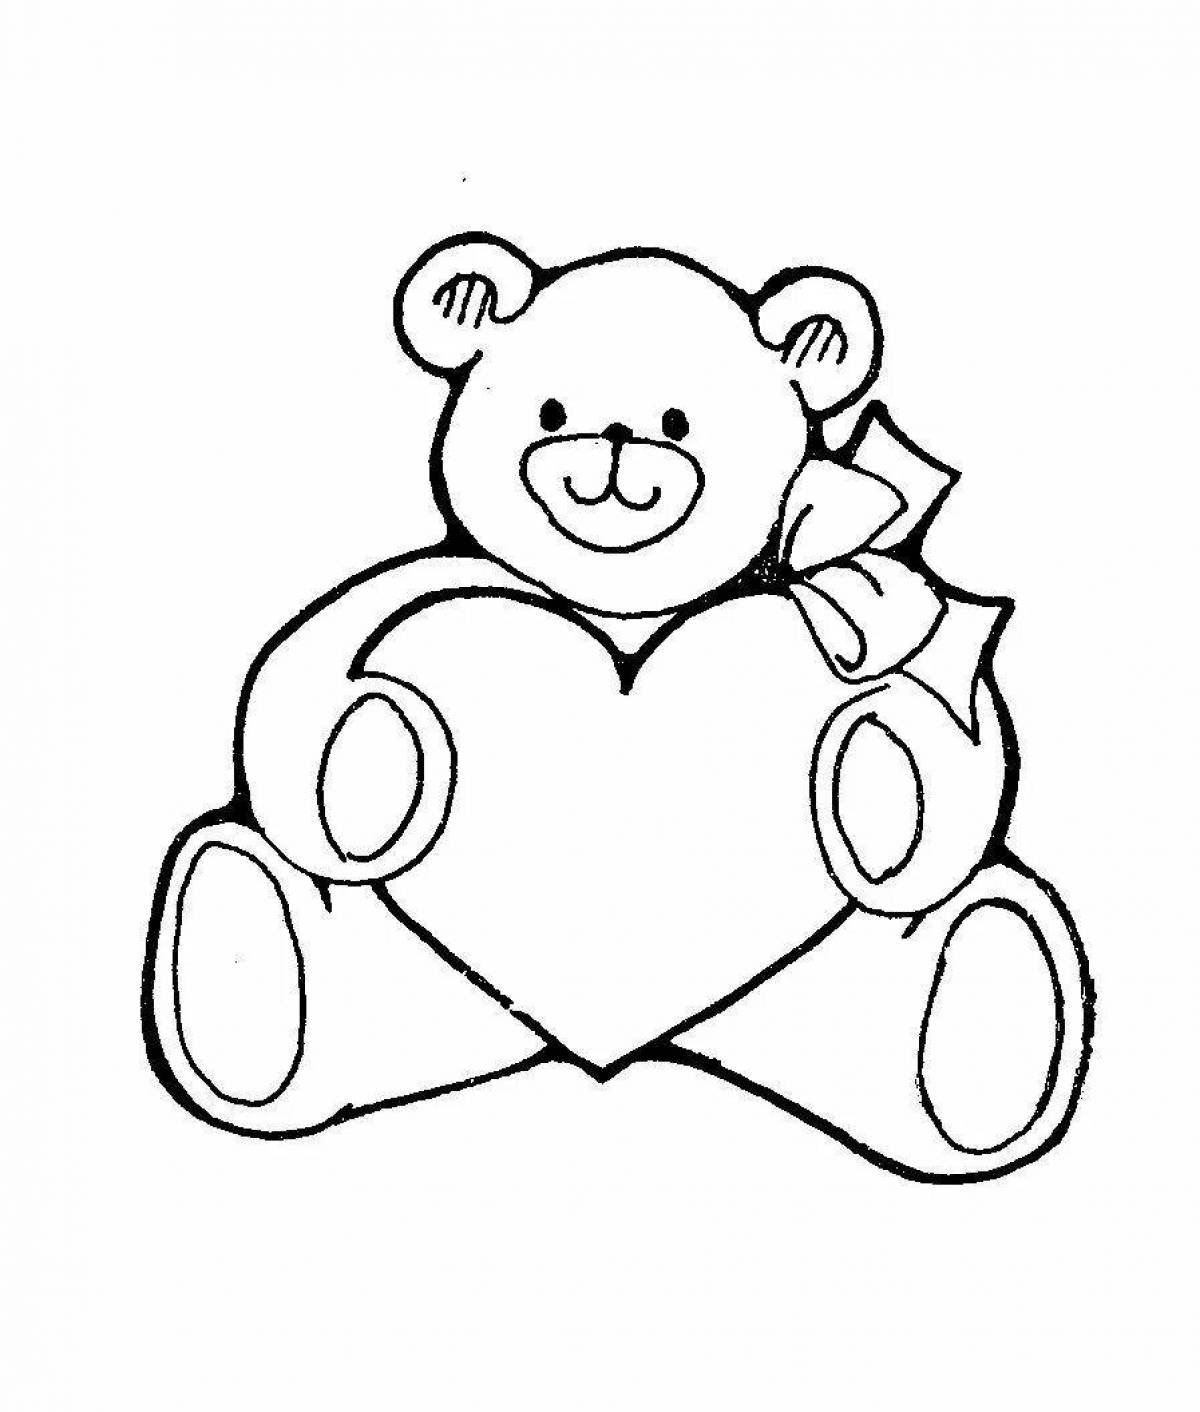 Раскраска Медвежонок Тедди с сердечком